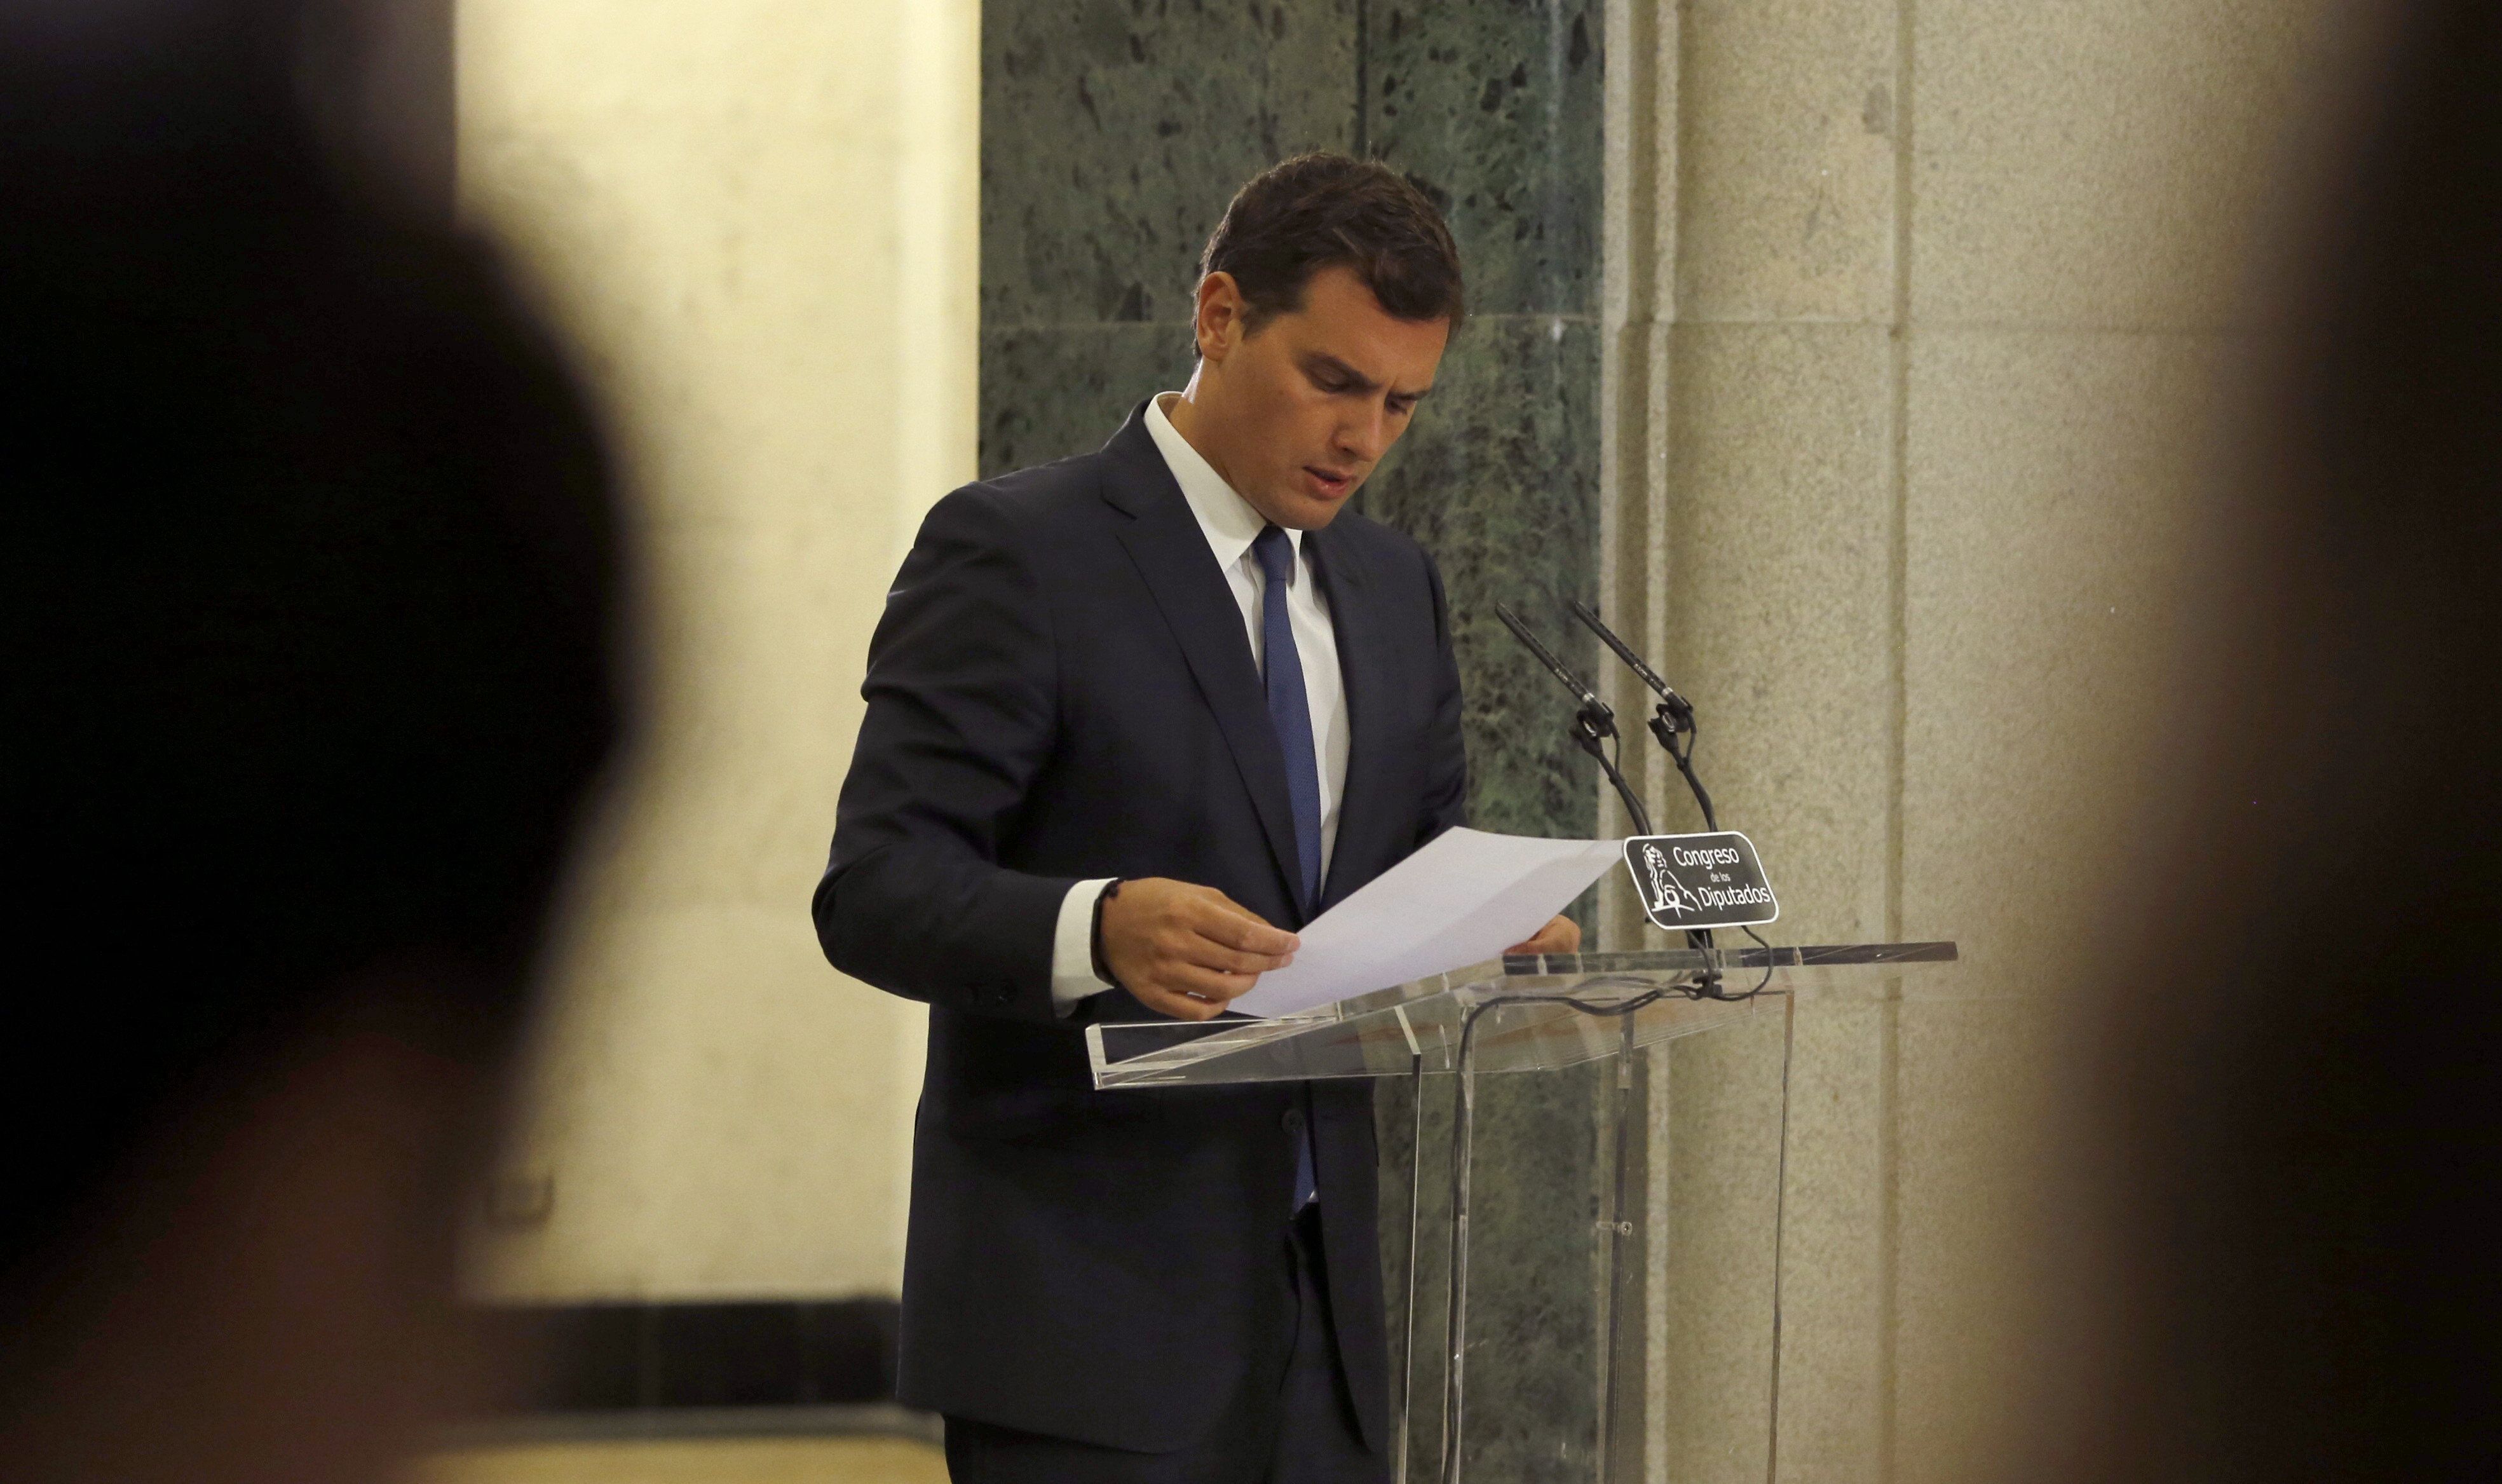 Rivera espera el 'sí' de Rajoy